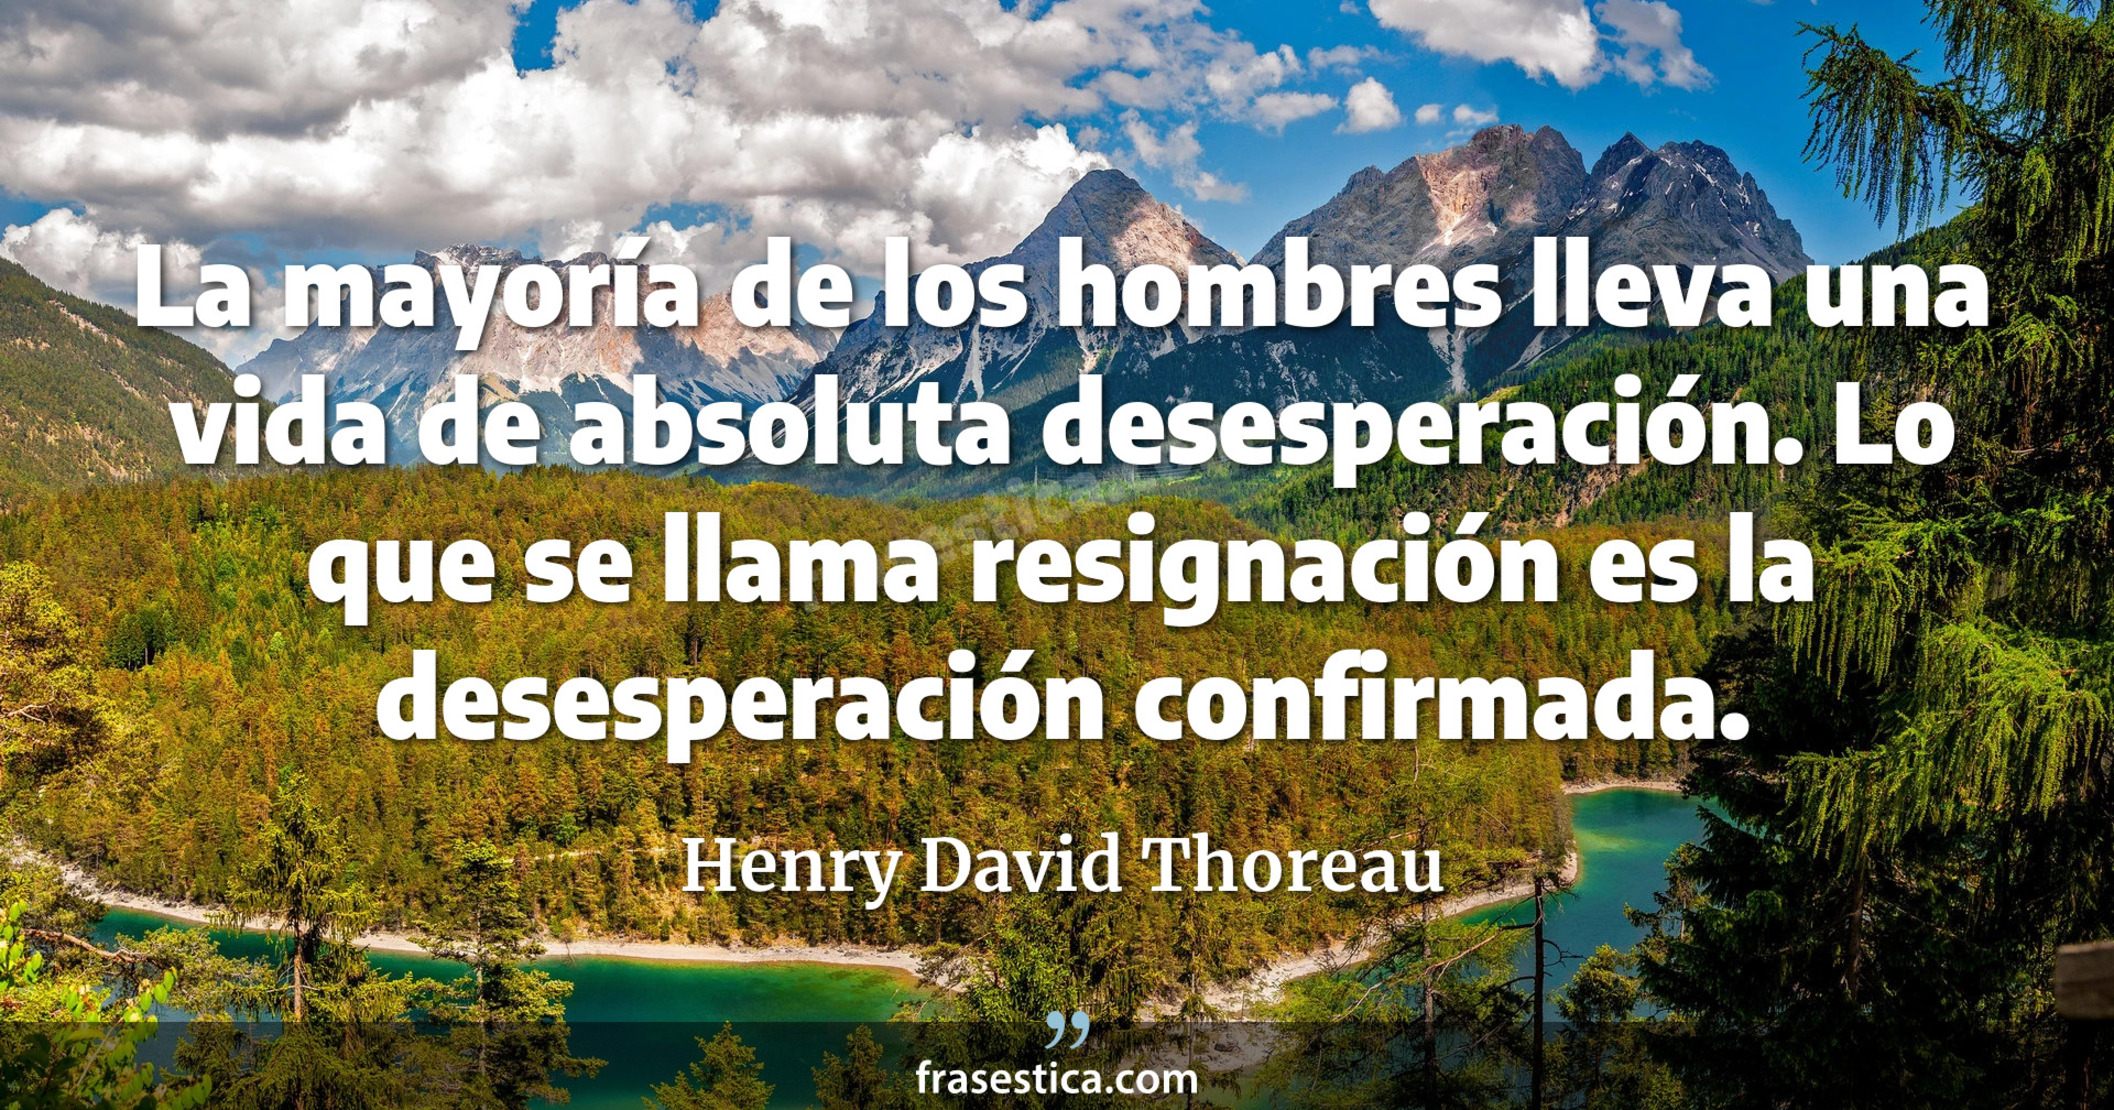 La mayoría de los hombres lleva una vida de absoluta desesperación. Lo que se llama resignación es la desesperación confirmada. - Henry David Thoreau